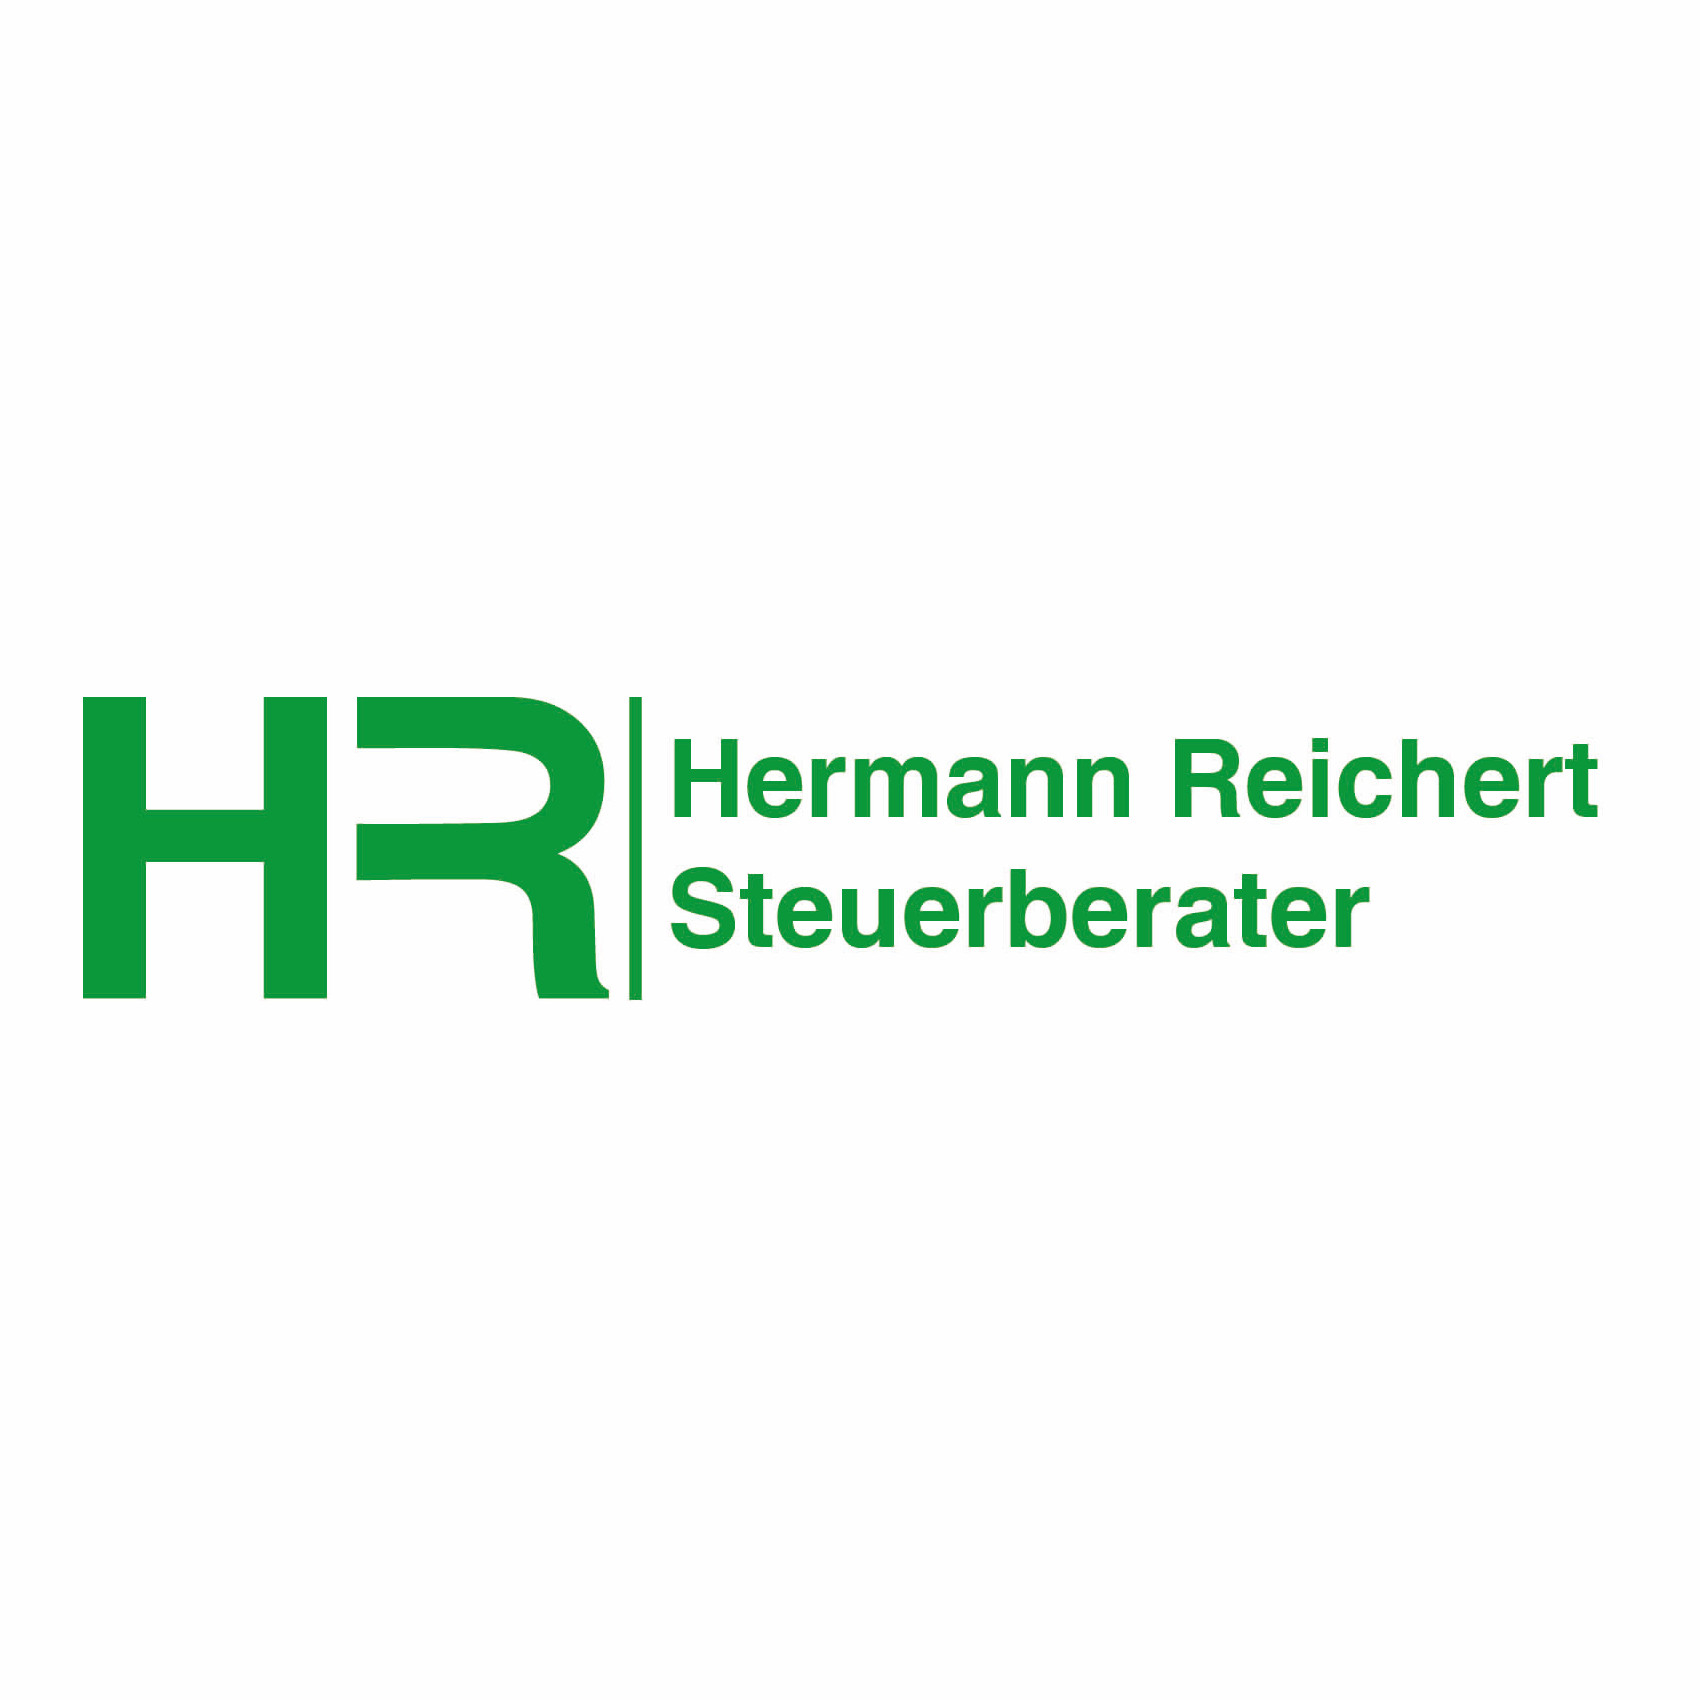 Steuerberater Hermann Reichert in Wittelshofen - Logo